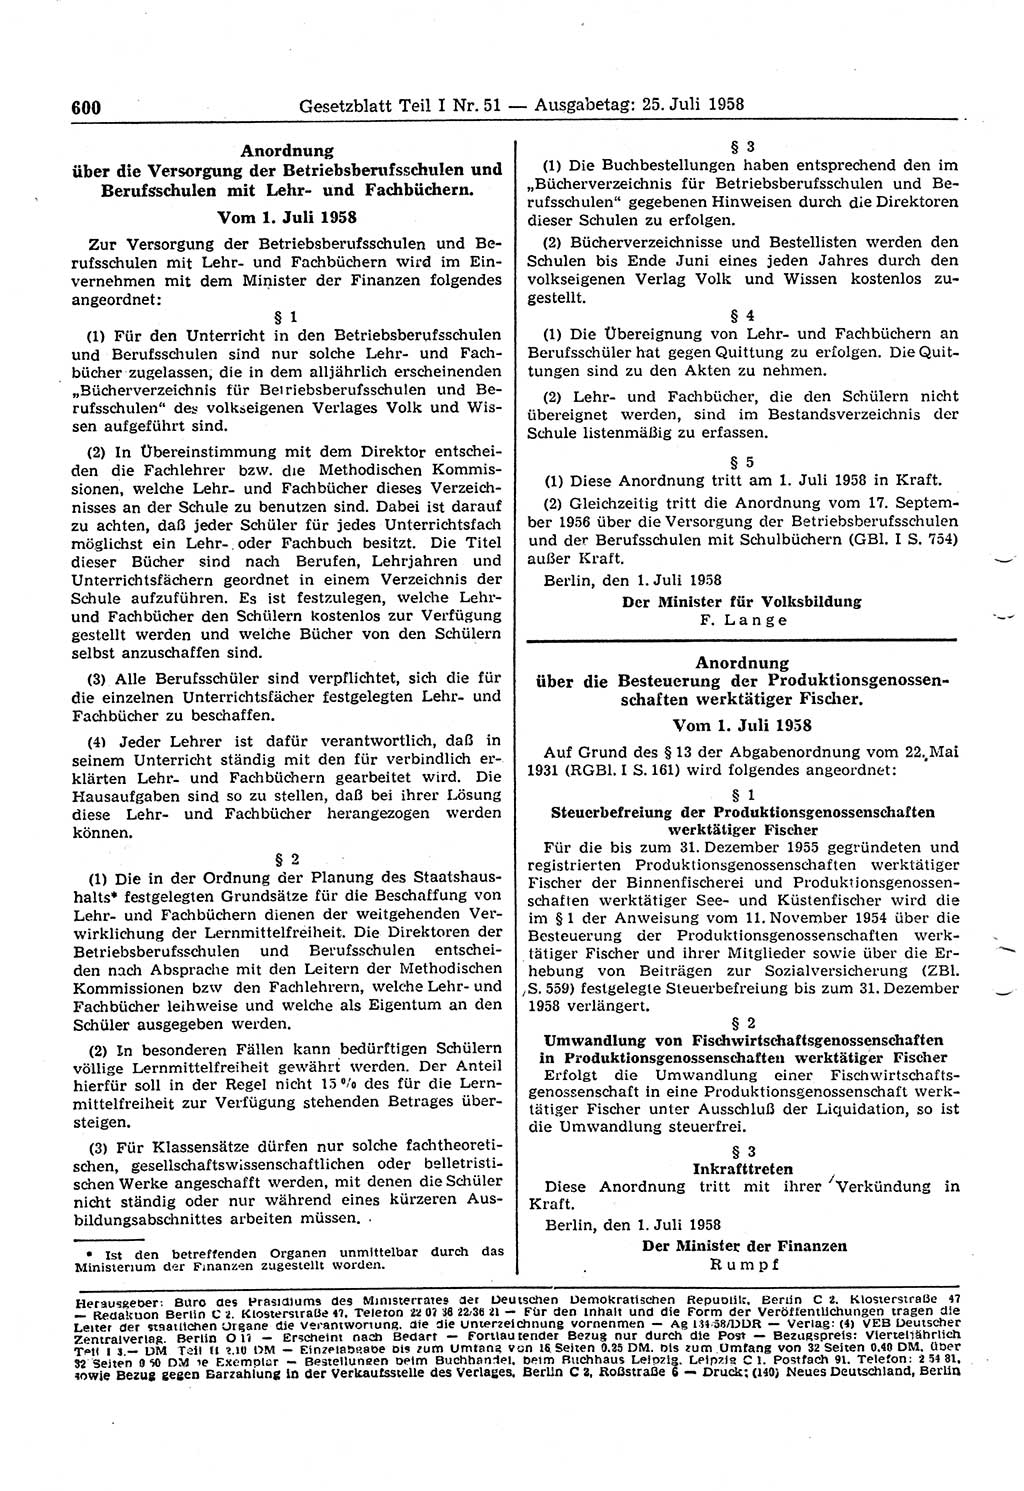 Gesetzblatt (GBl.) der Deutschen Demokratischen Republik (DDR) Teil Ⅰ 1958, Seite 600 (GBl. DDR Ⅰ 1958, S. 600)